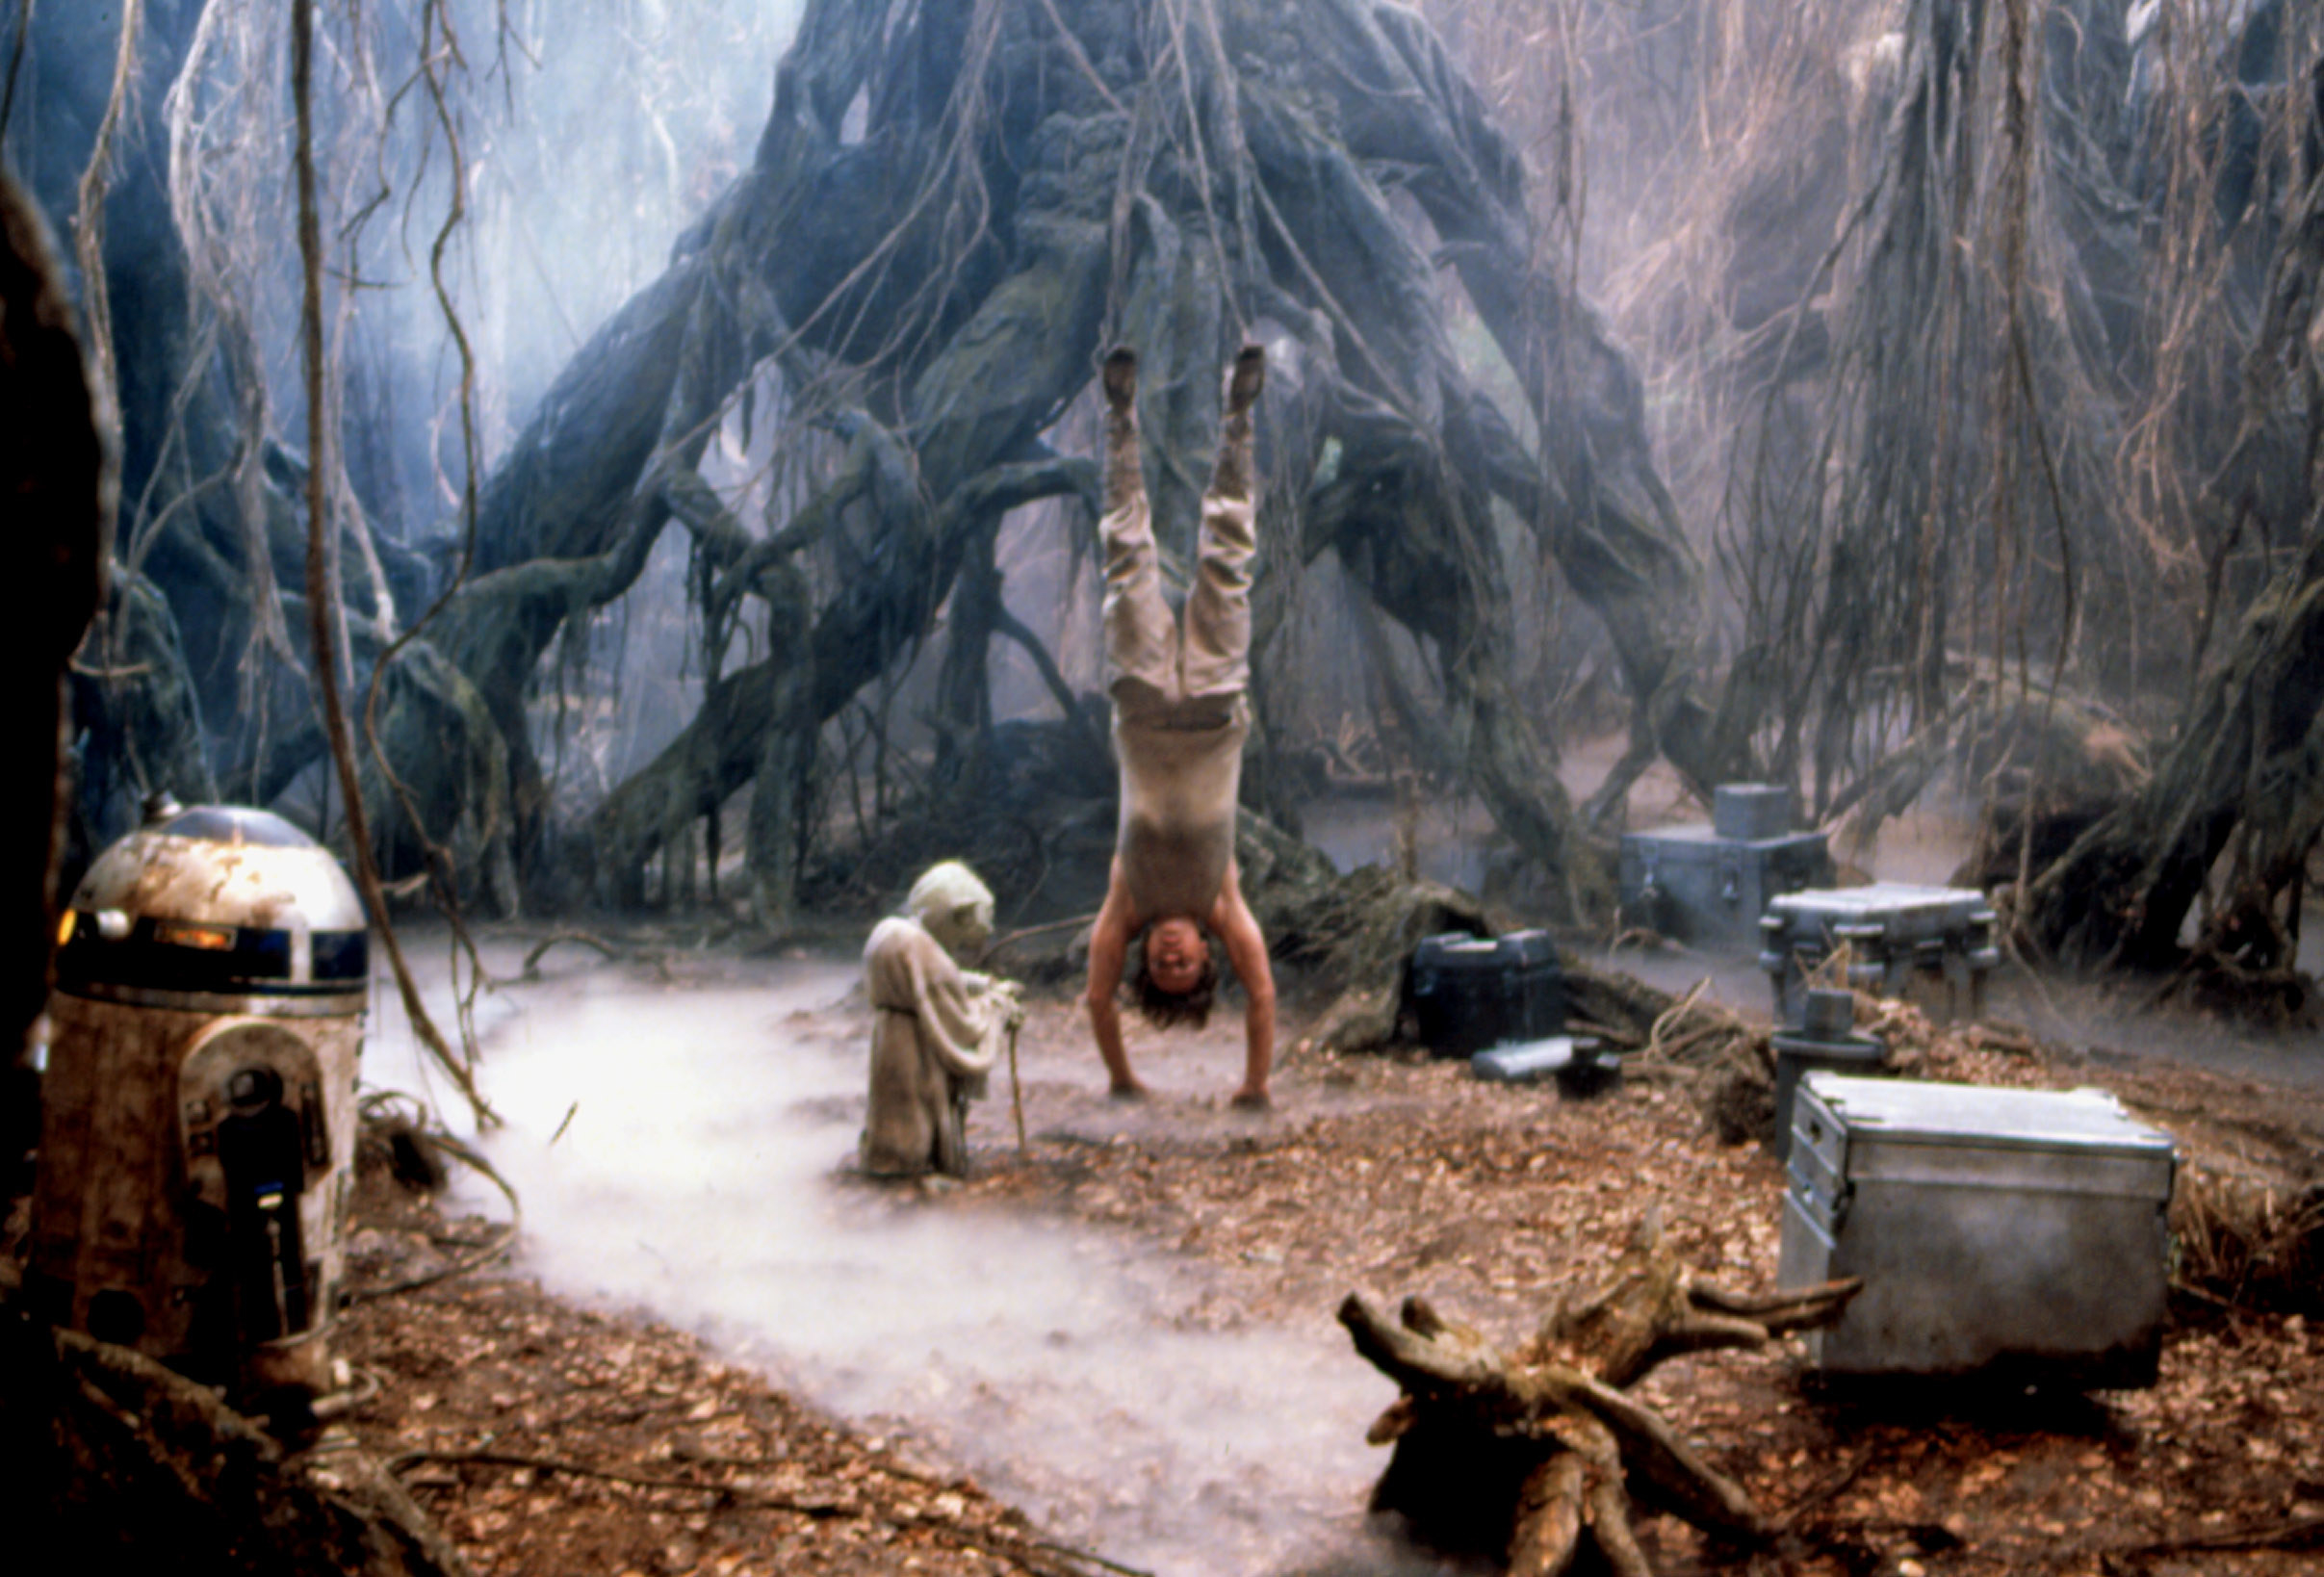 Yoda looks at Mark Hamill turned upside down